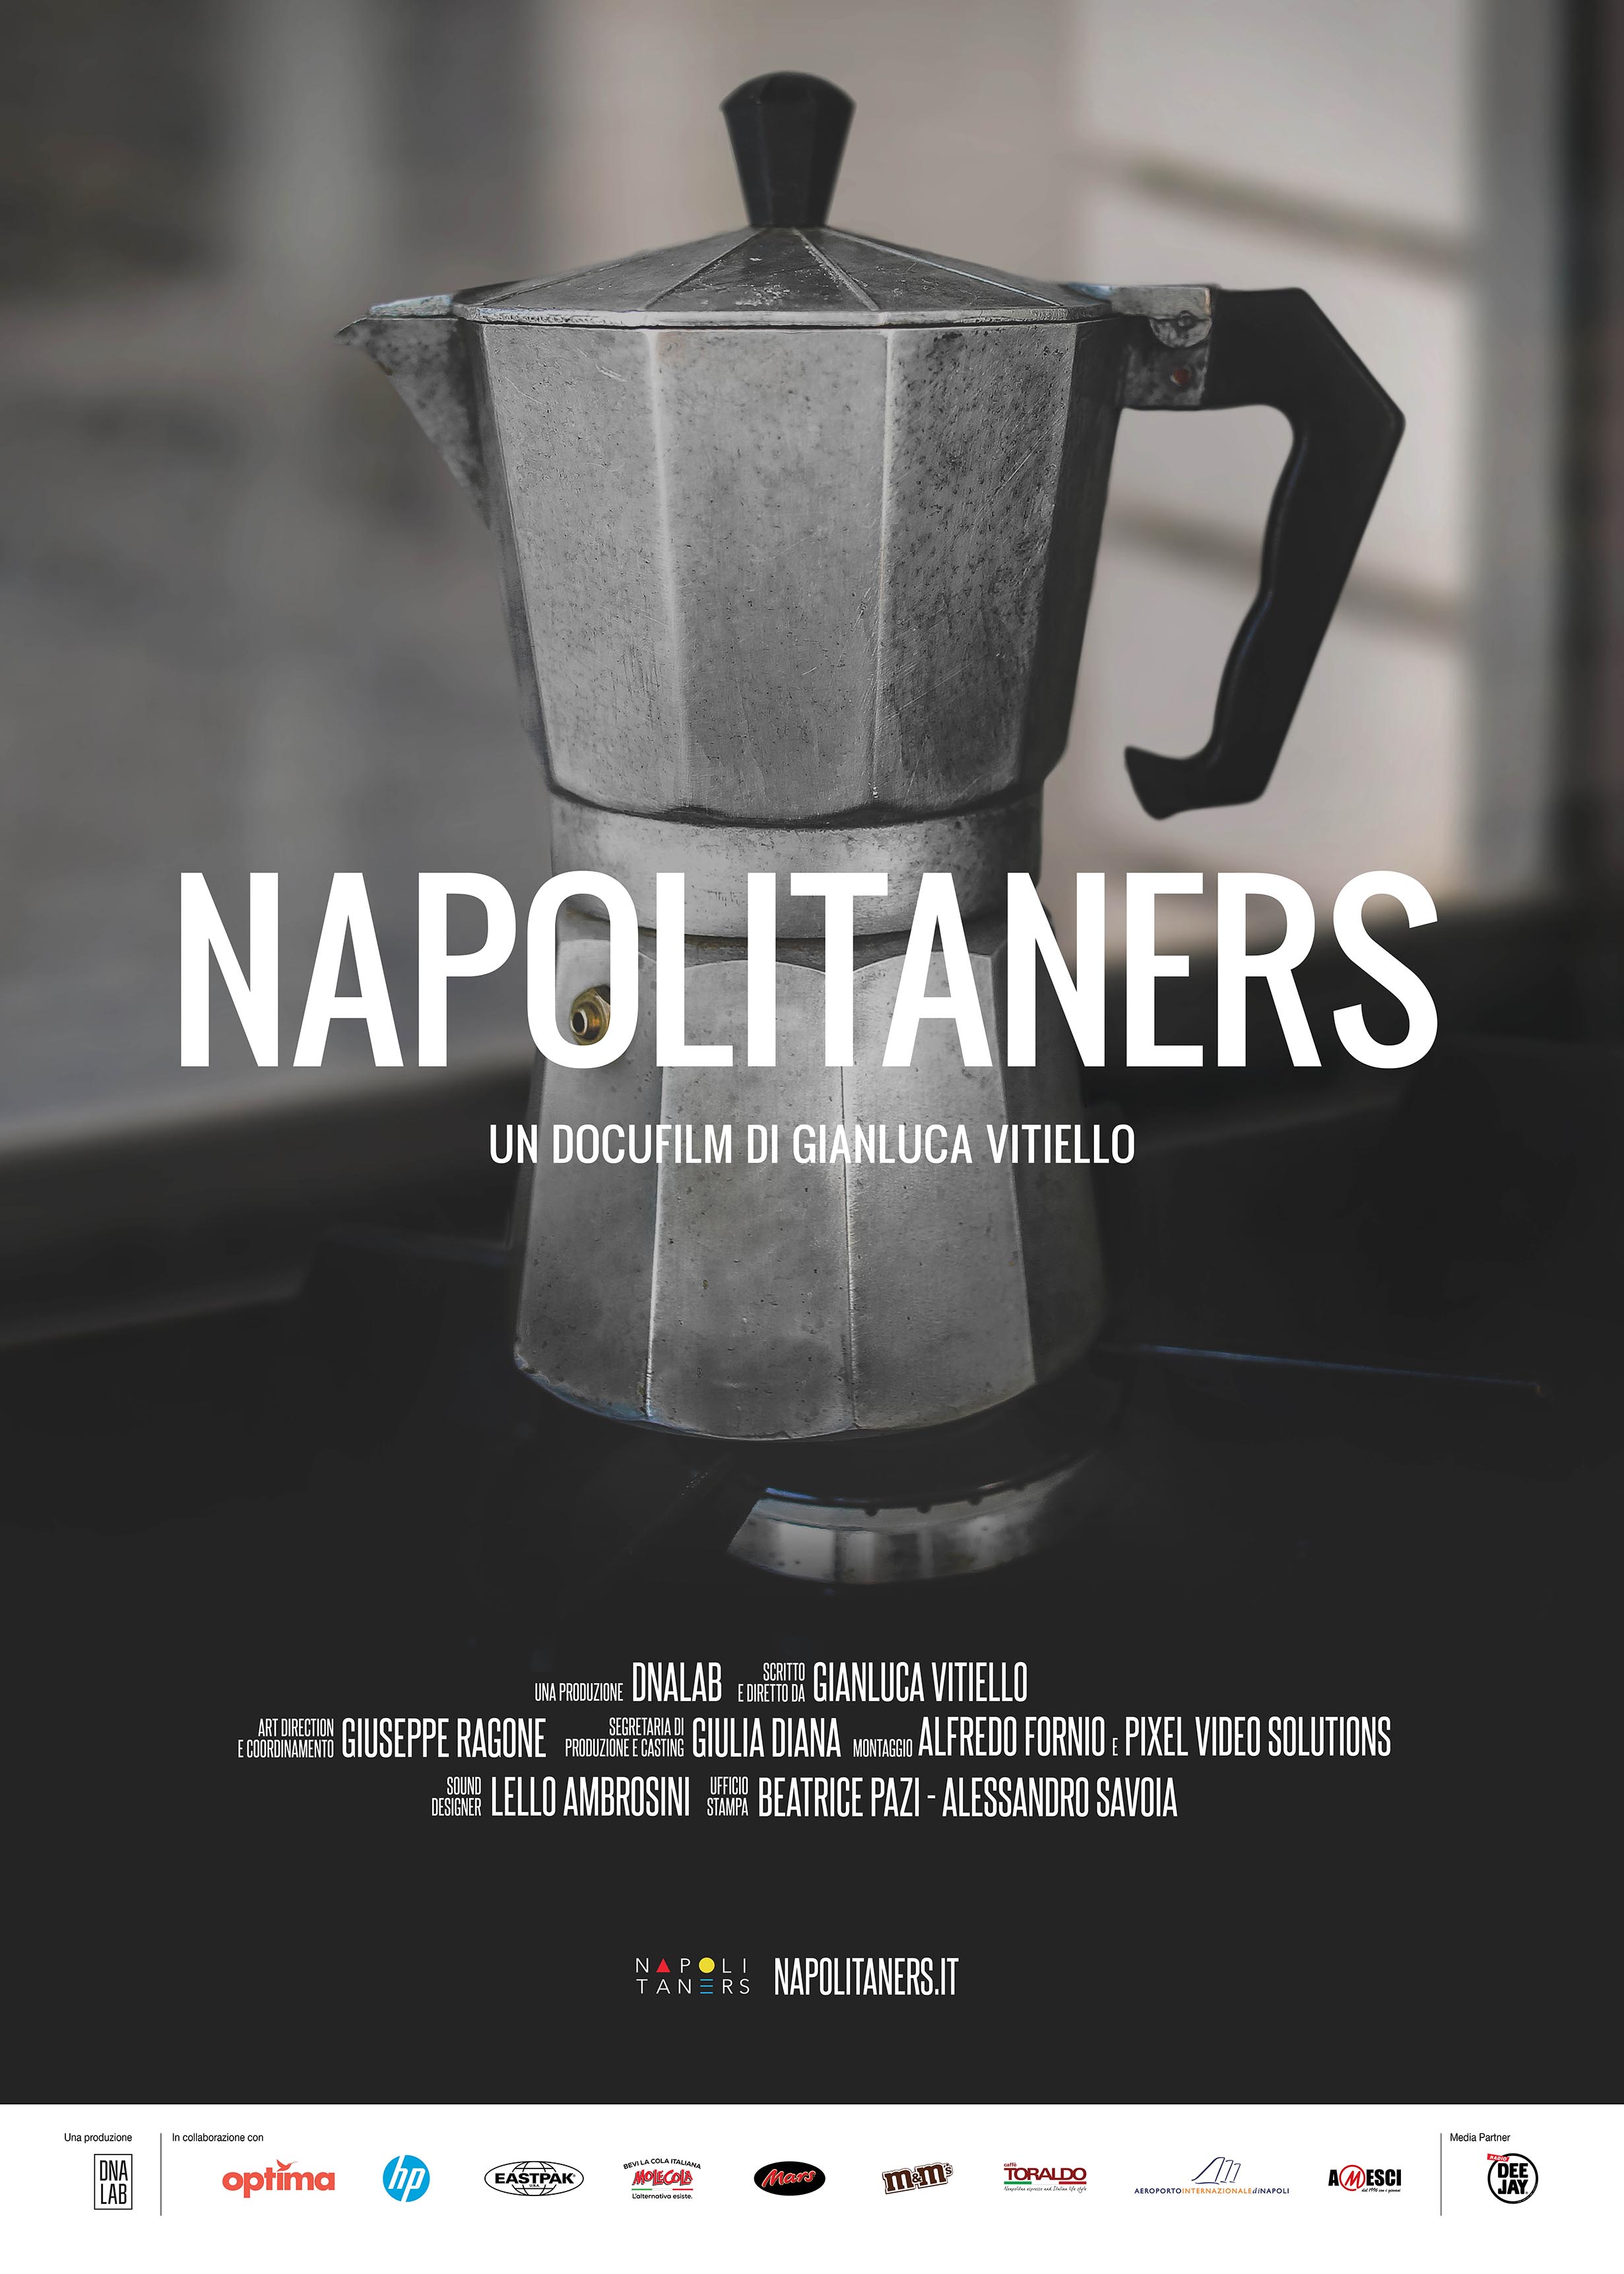 Napolitaners: il docufilm di Gianluca Vitiello arriva a Tokyo